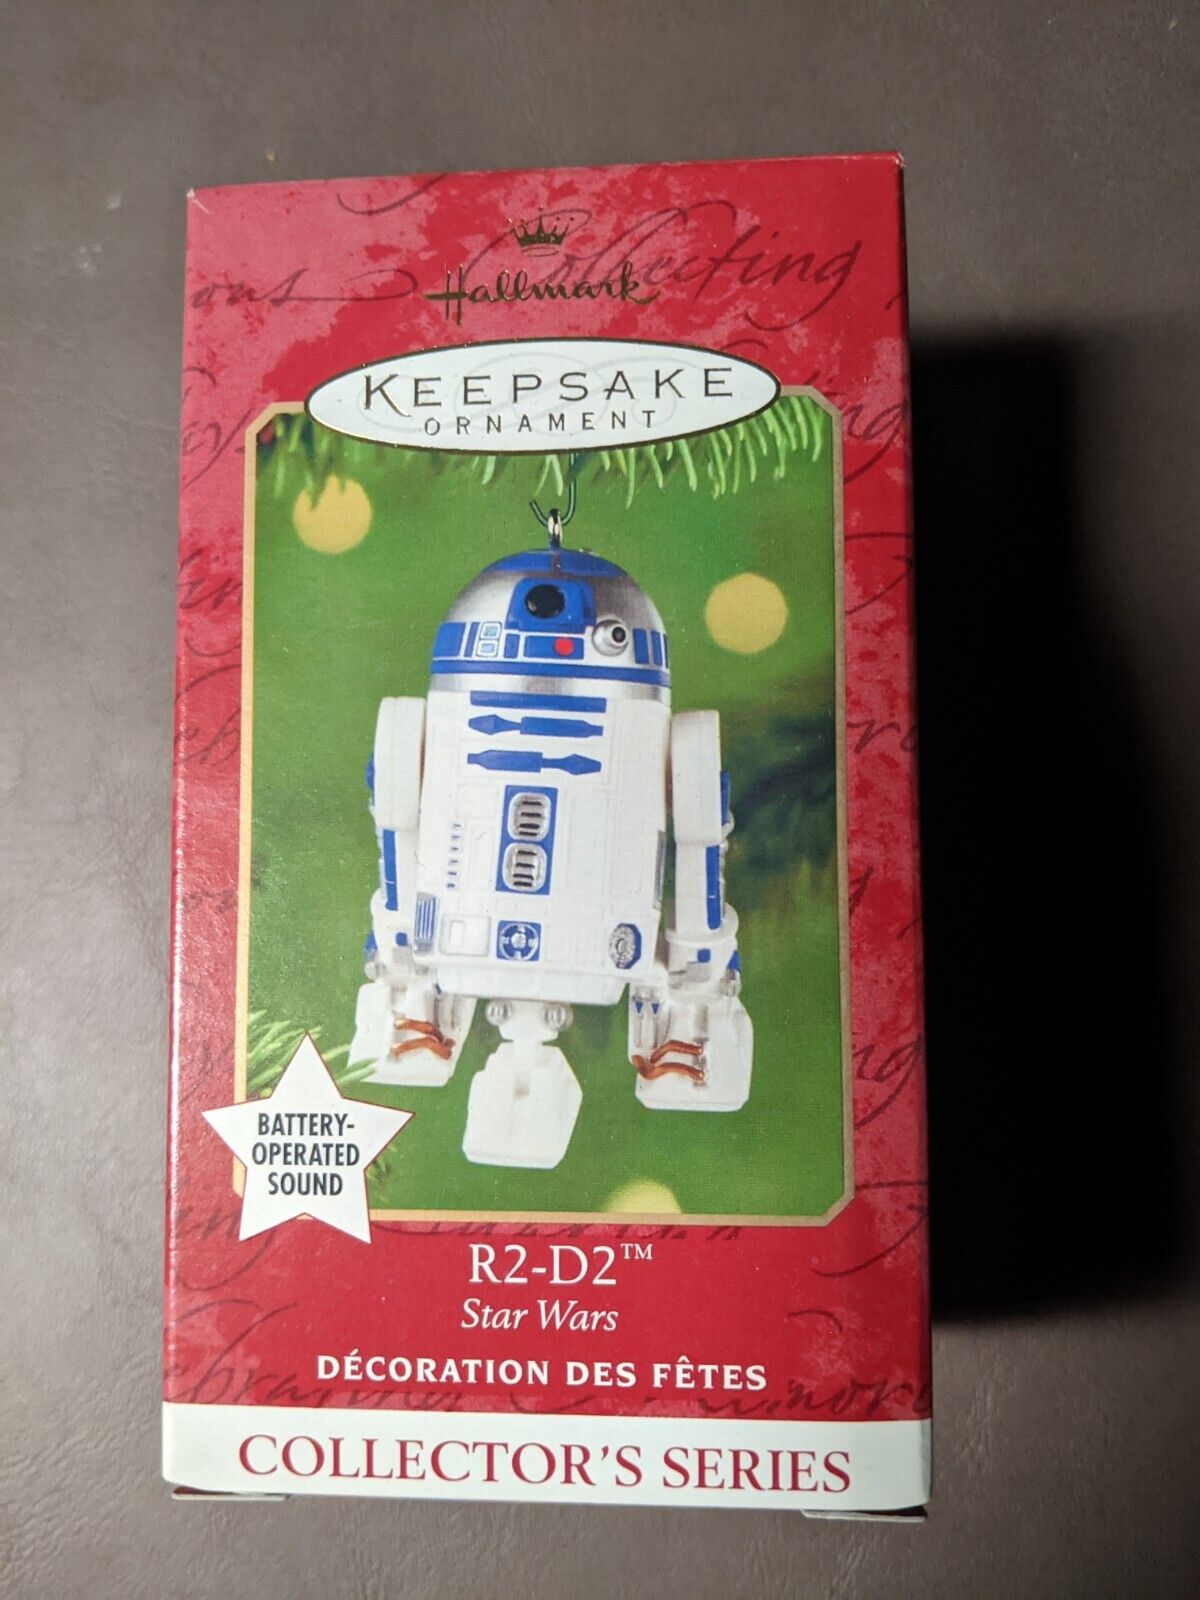 Hallmark Keepsake ornament Star Wars R2-D2 (with sound), 2001